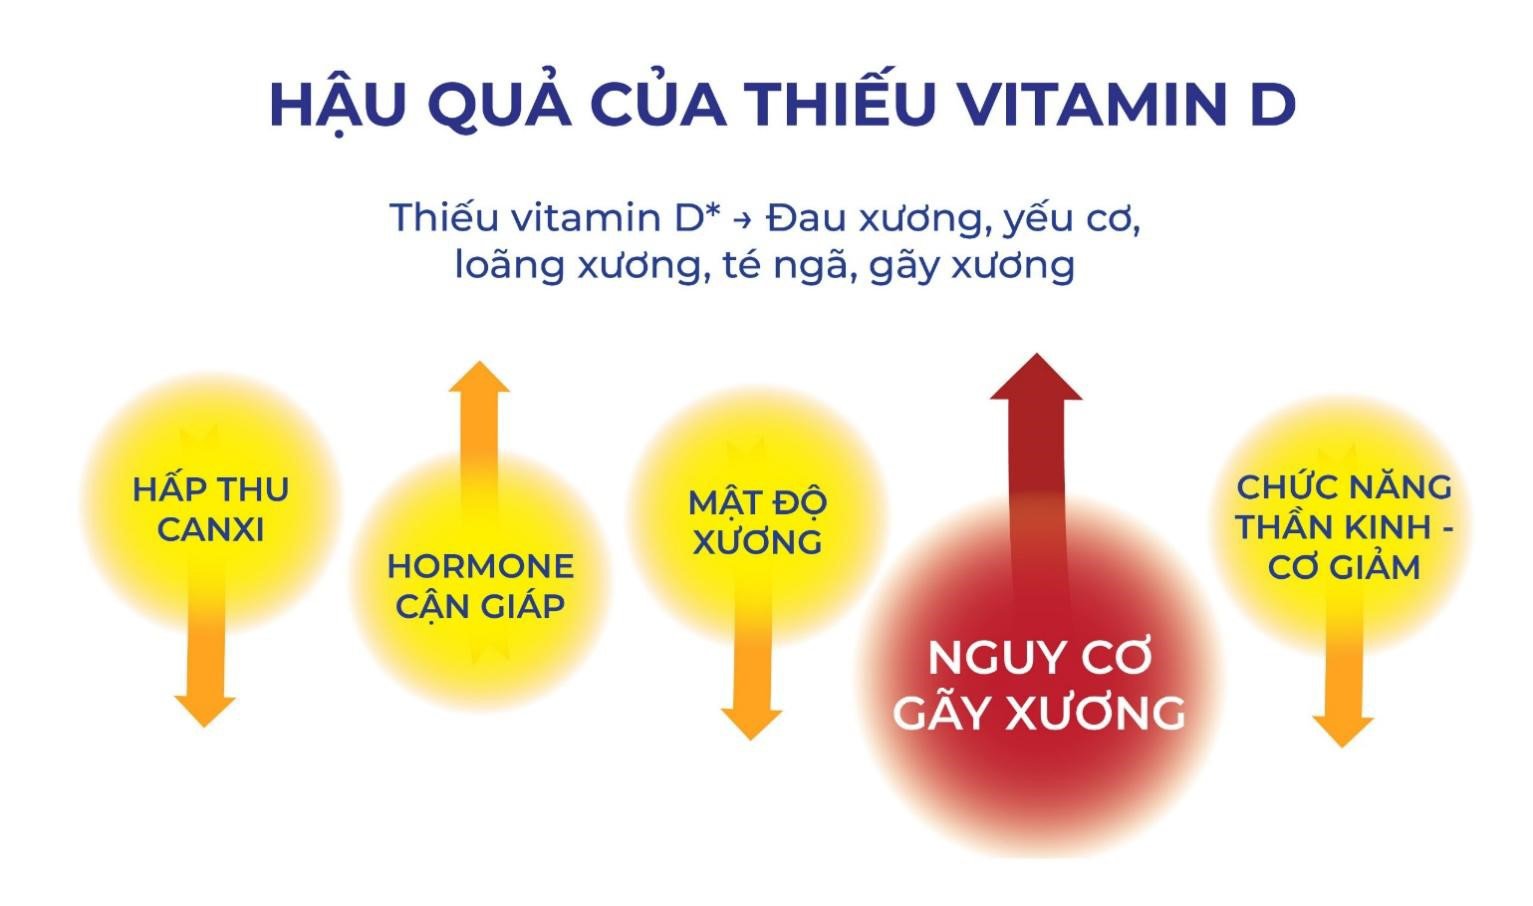 Bổ sung Vitamin D cho người lớn cùng viên uống Sundovit - 2